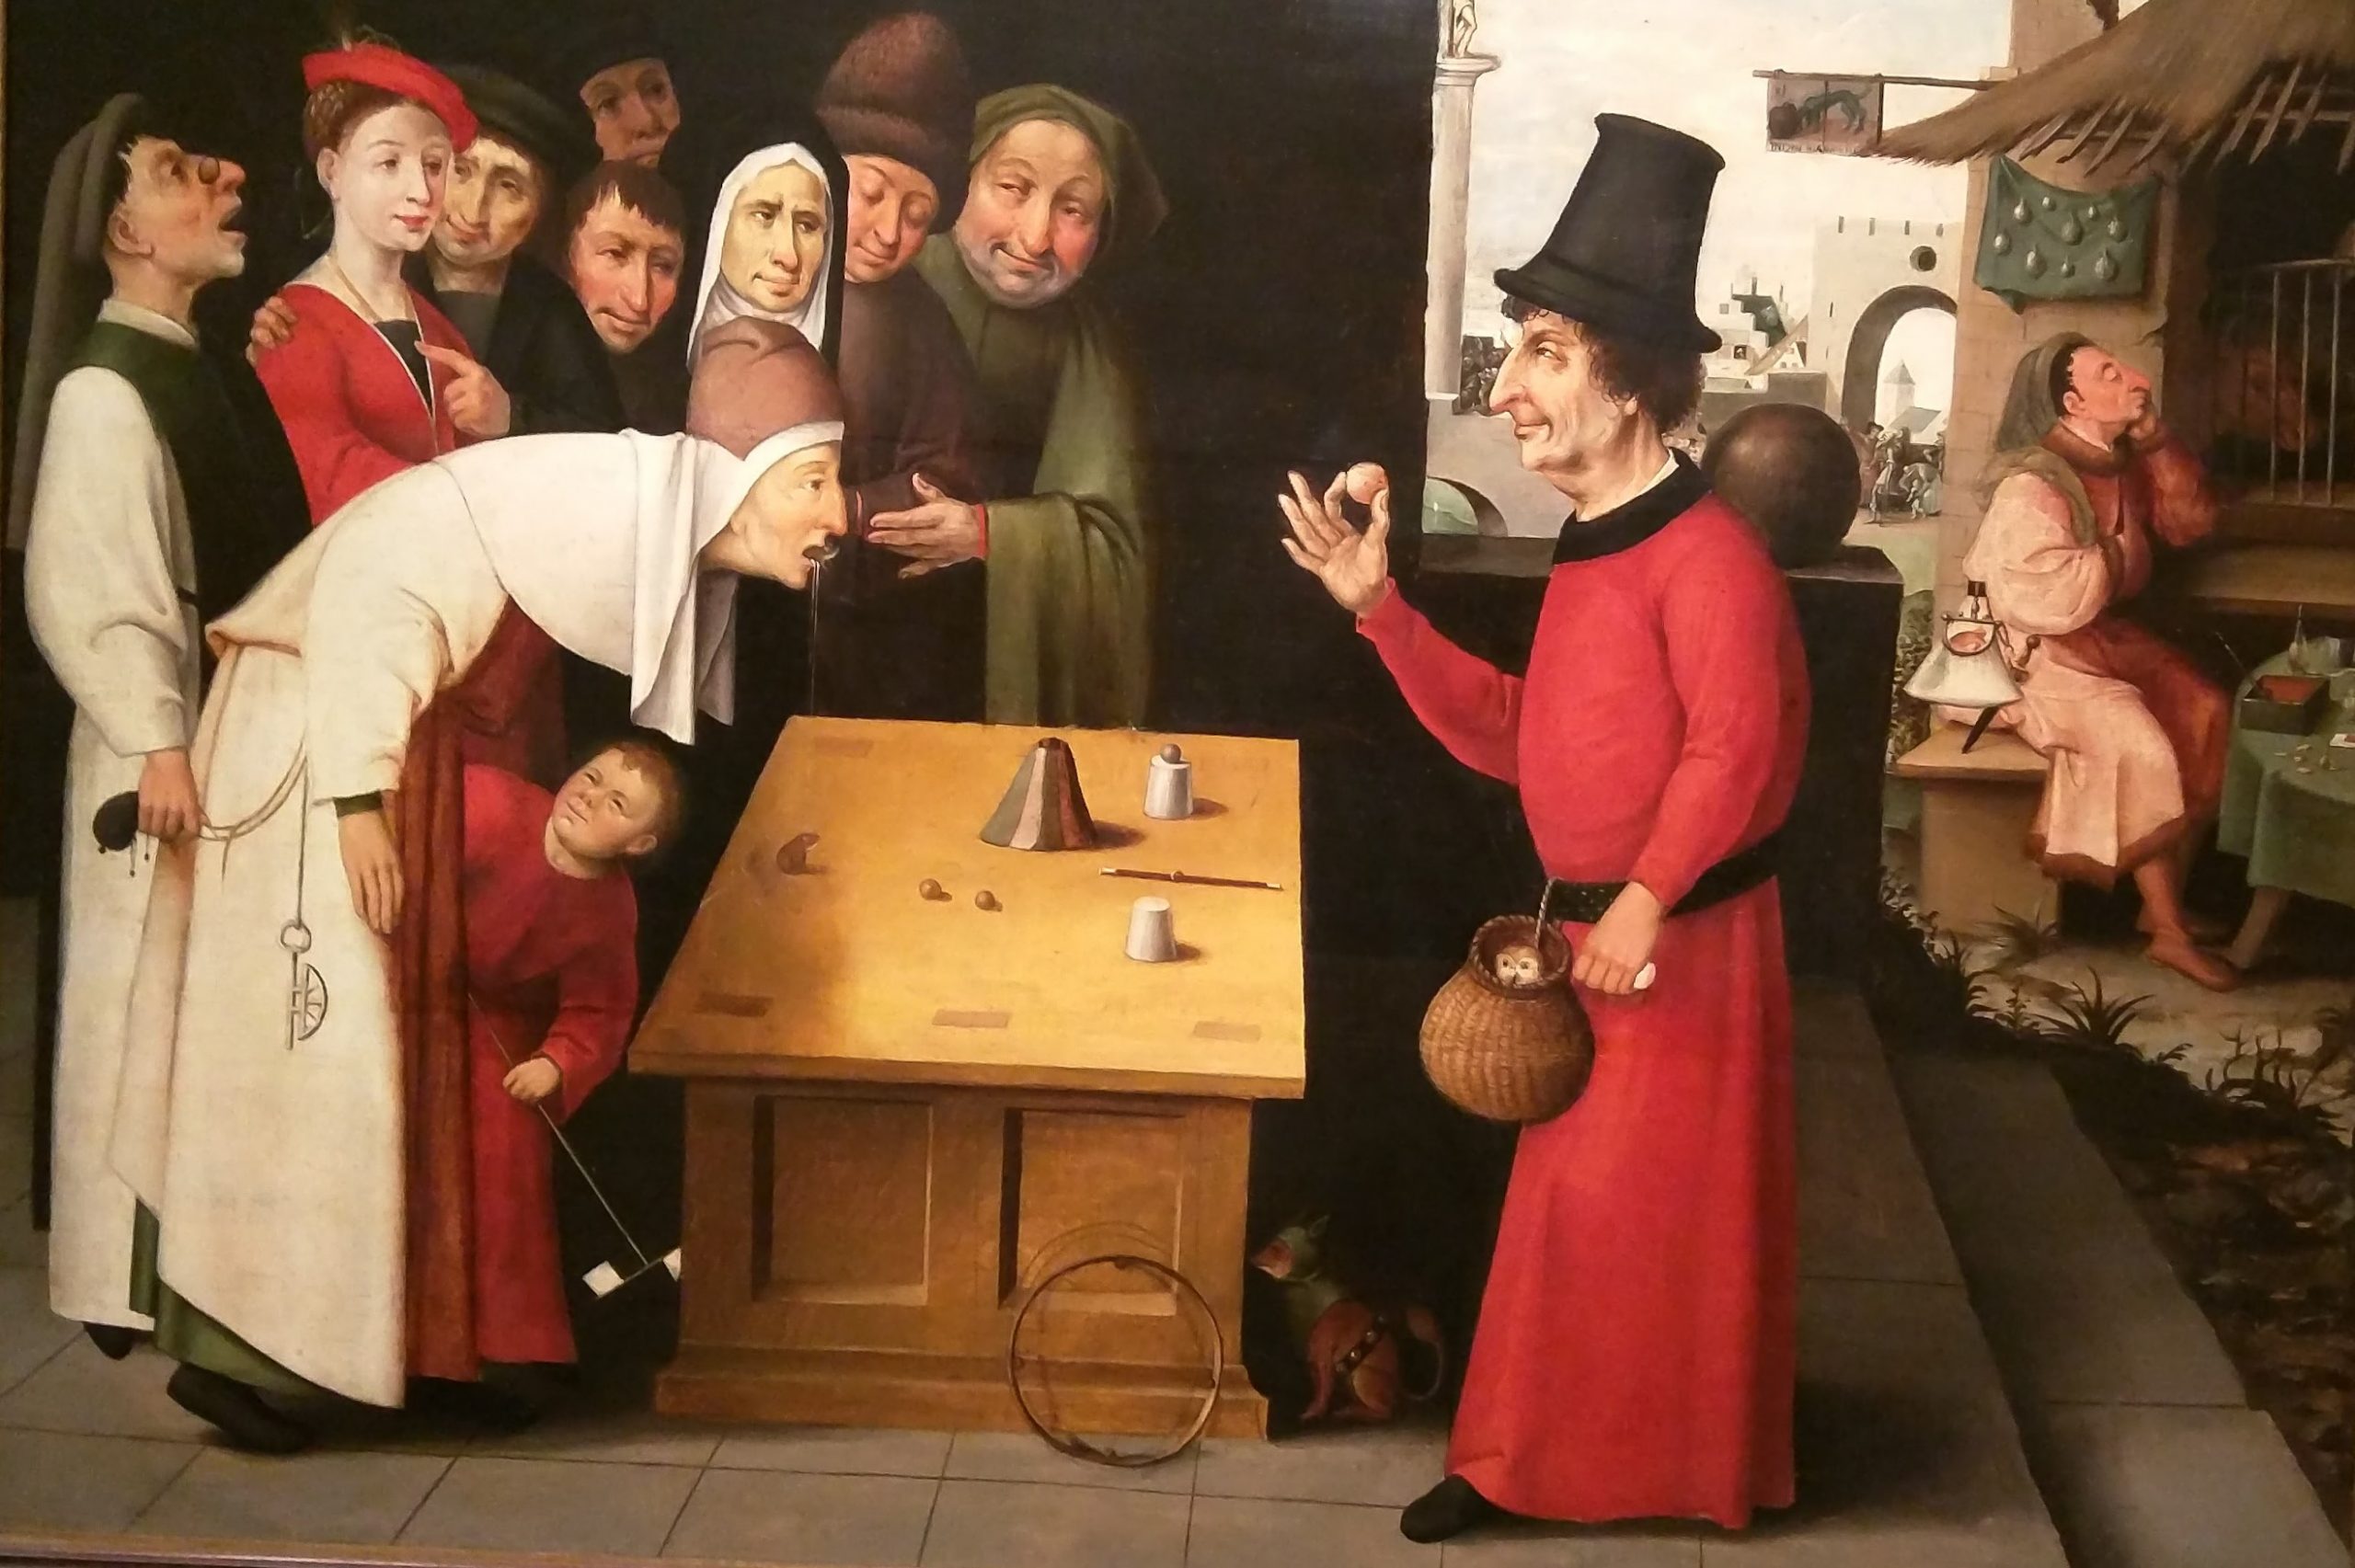 The Conjurer, School of Hieronymus Bosch